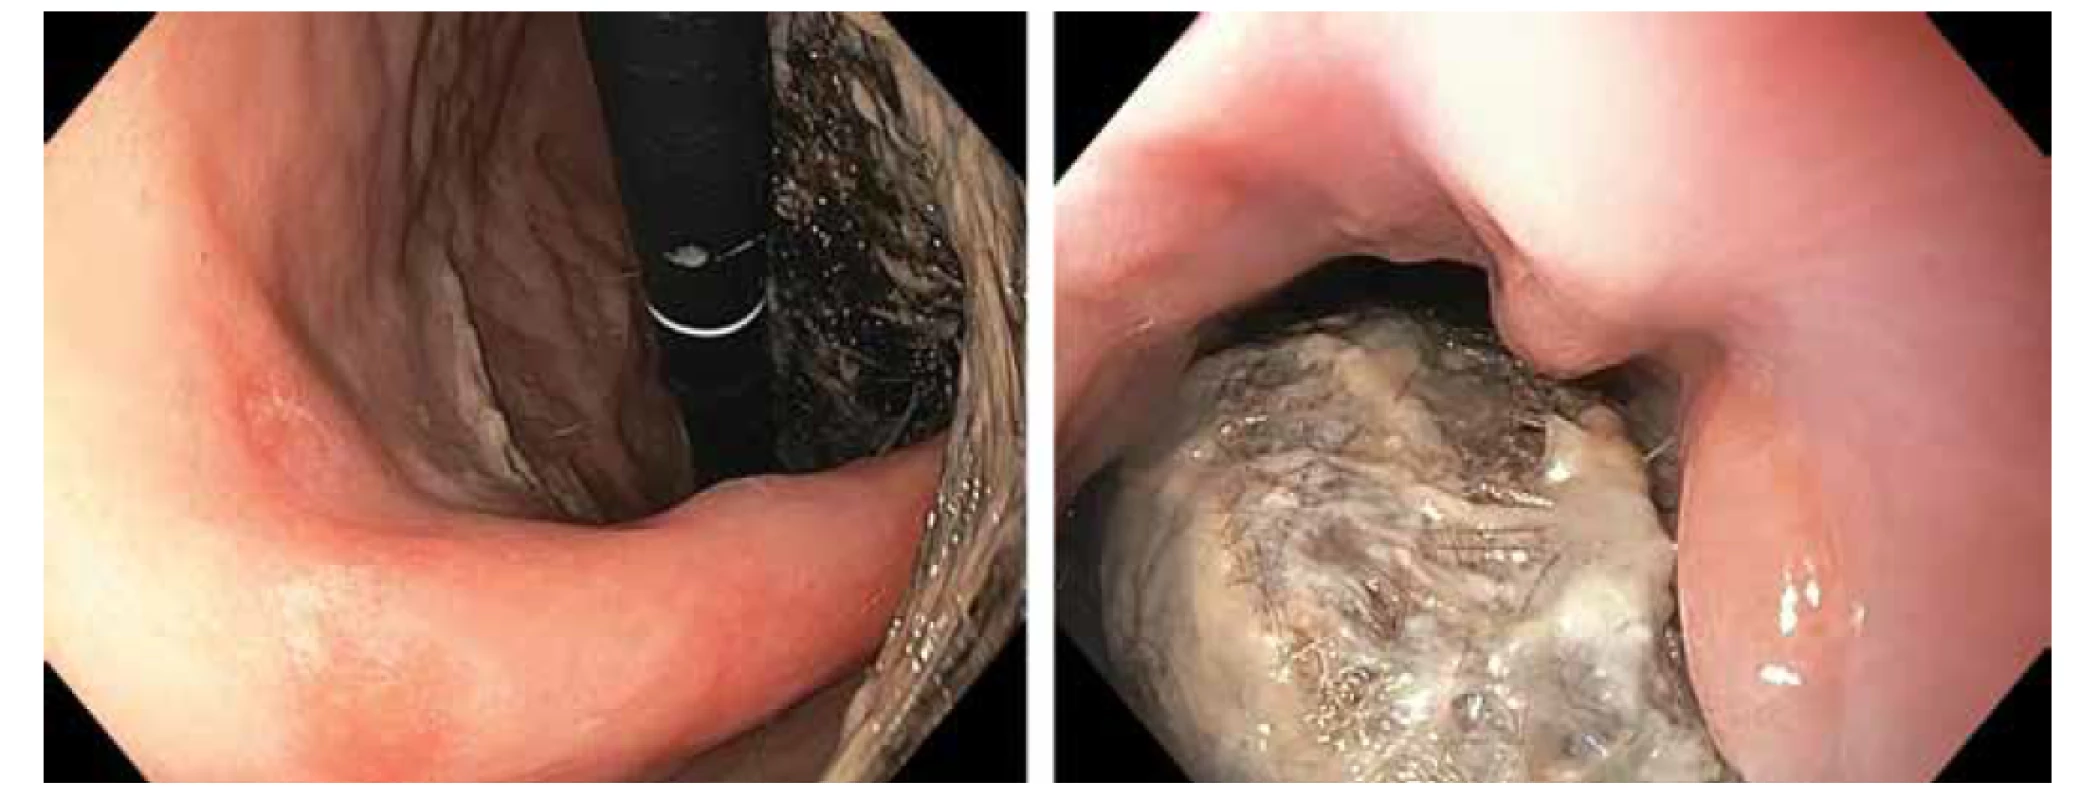 Gastroskopický nález - objemný trichobezoár vyplňující žaludek a zasahující do bulbu duodena.<br>
Fig. 2. Gastroscopy: large trichobezoar fills gastric lumen and extends to duodenal bulb.